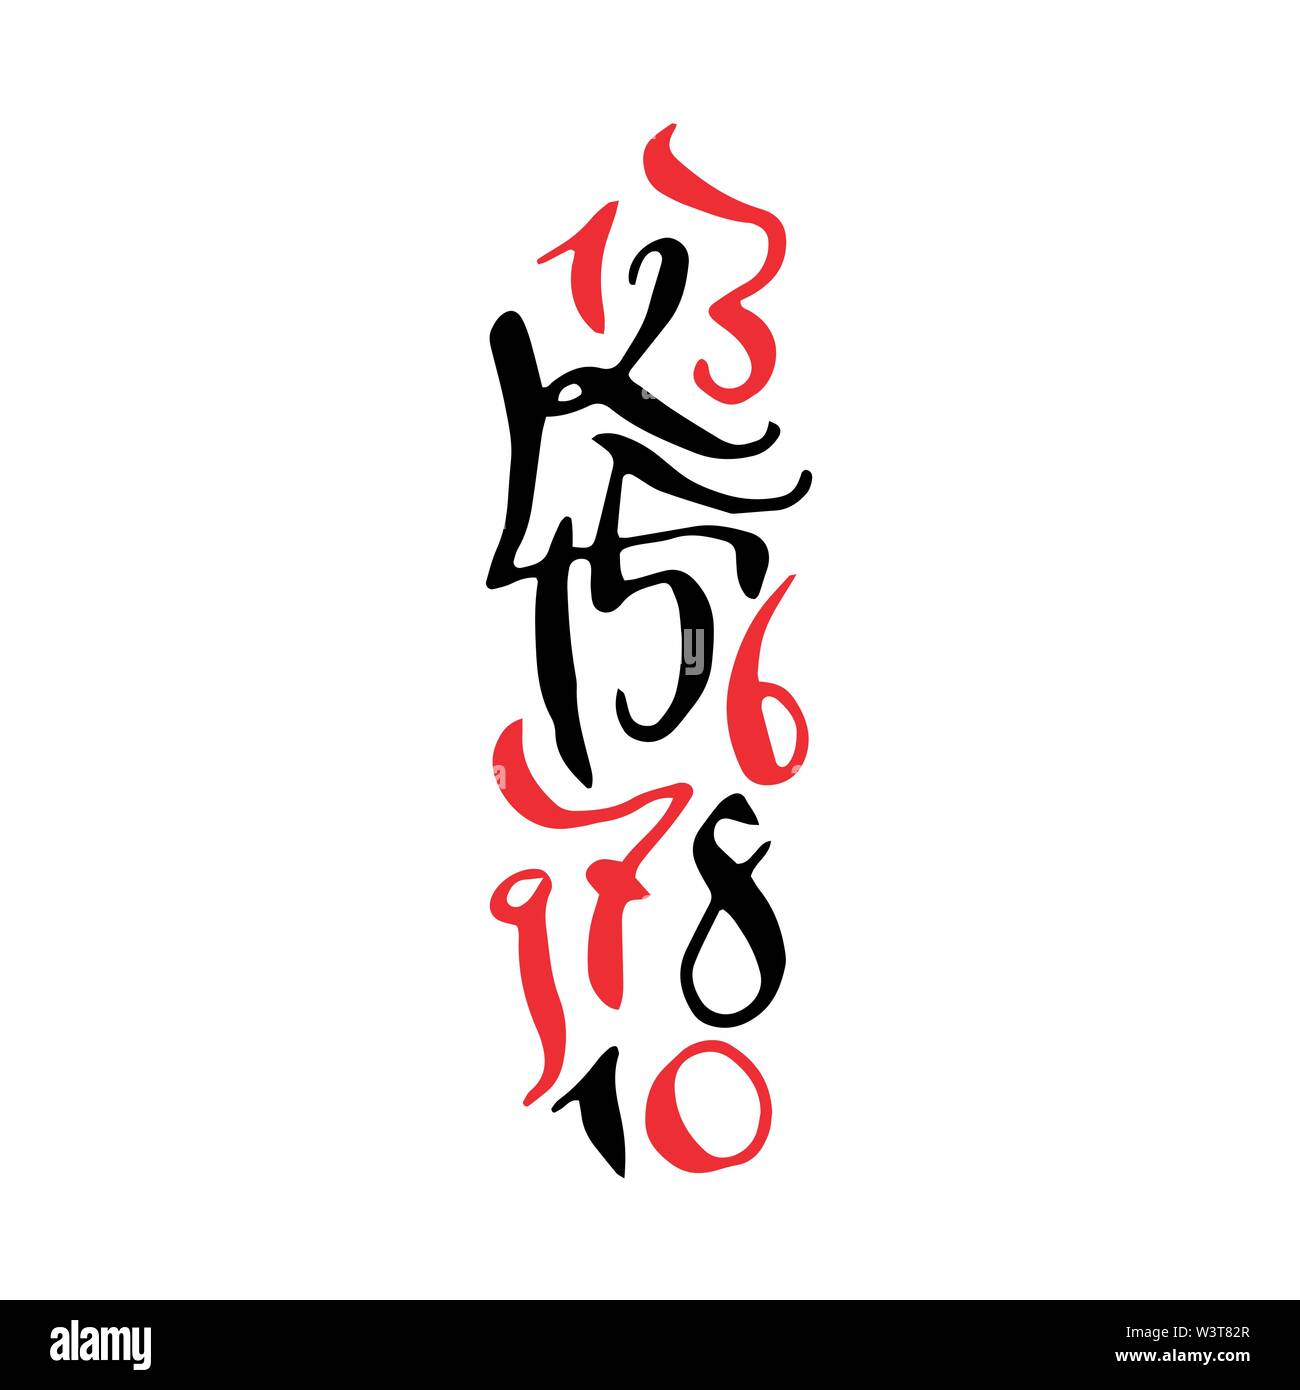 Nero e rosso stile arabo disegnati a mano di alta qualità calligraphy poster con i numeri. Isolato su sfondo bianco Illustrazione Vettoriale